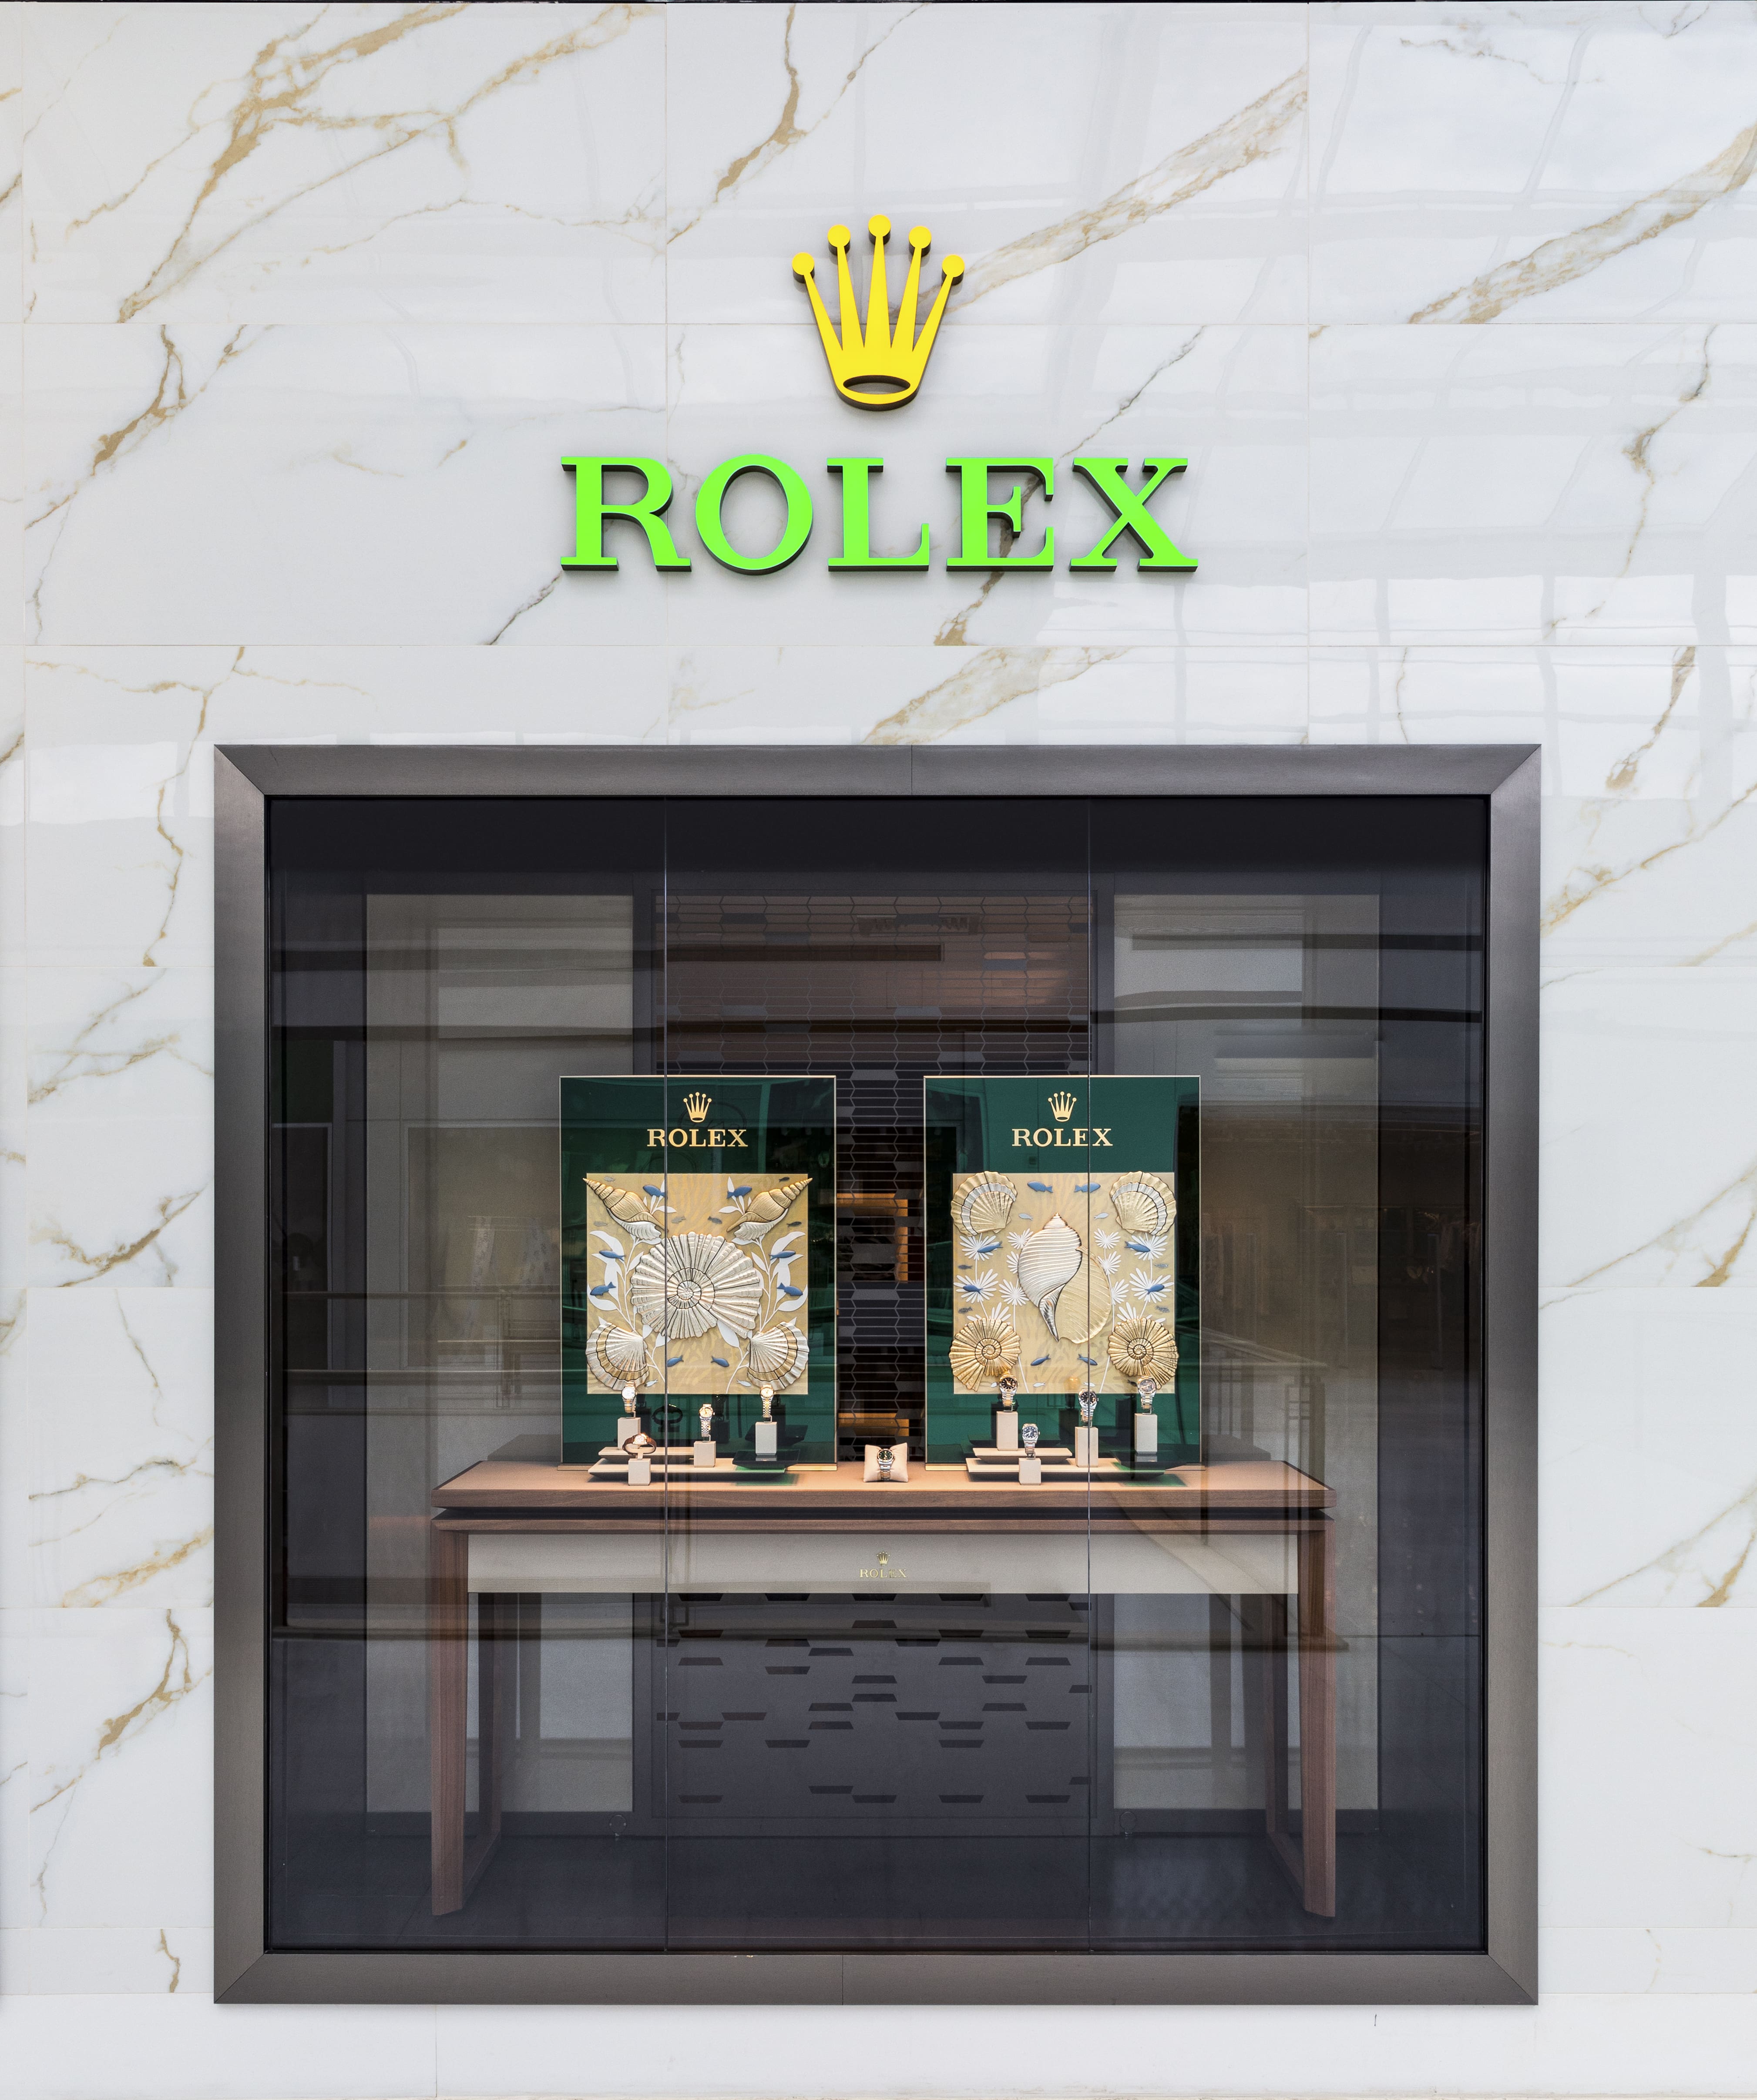 Vários relógios Rolex expostos em vitrines elegantes com quadros ao fundo